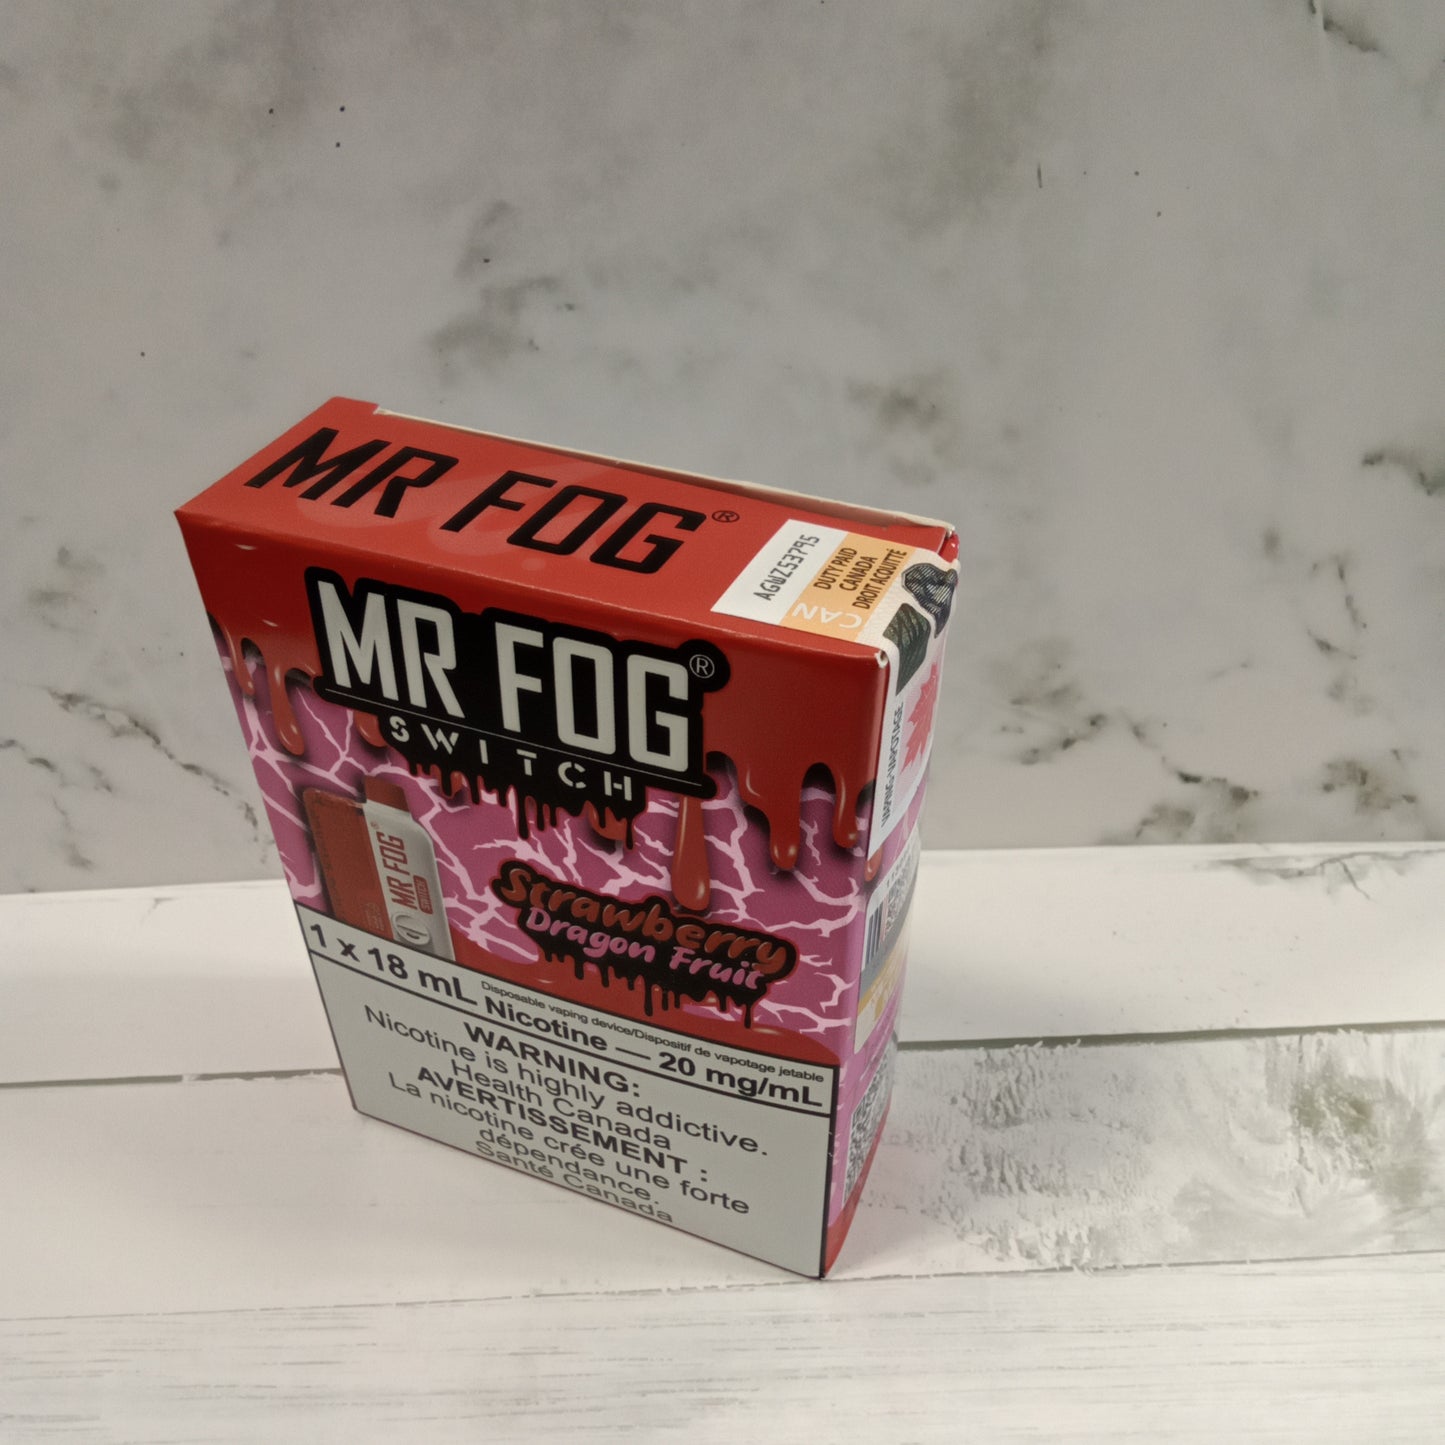 Mr fog switch 15000